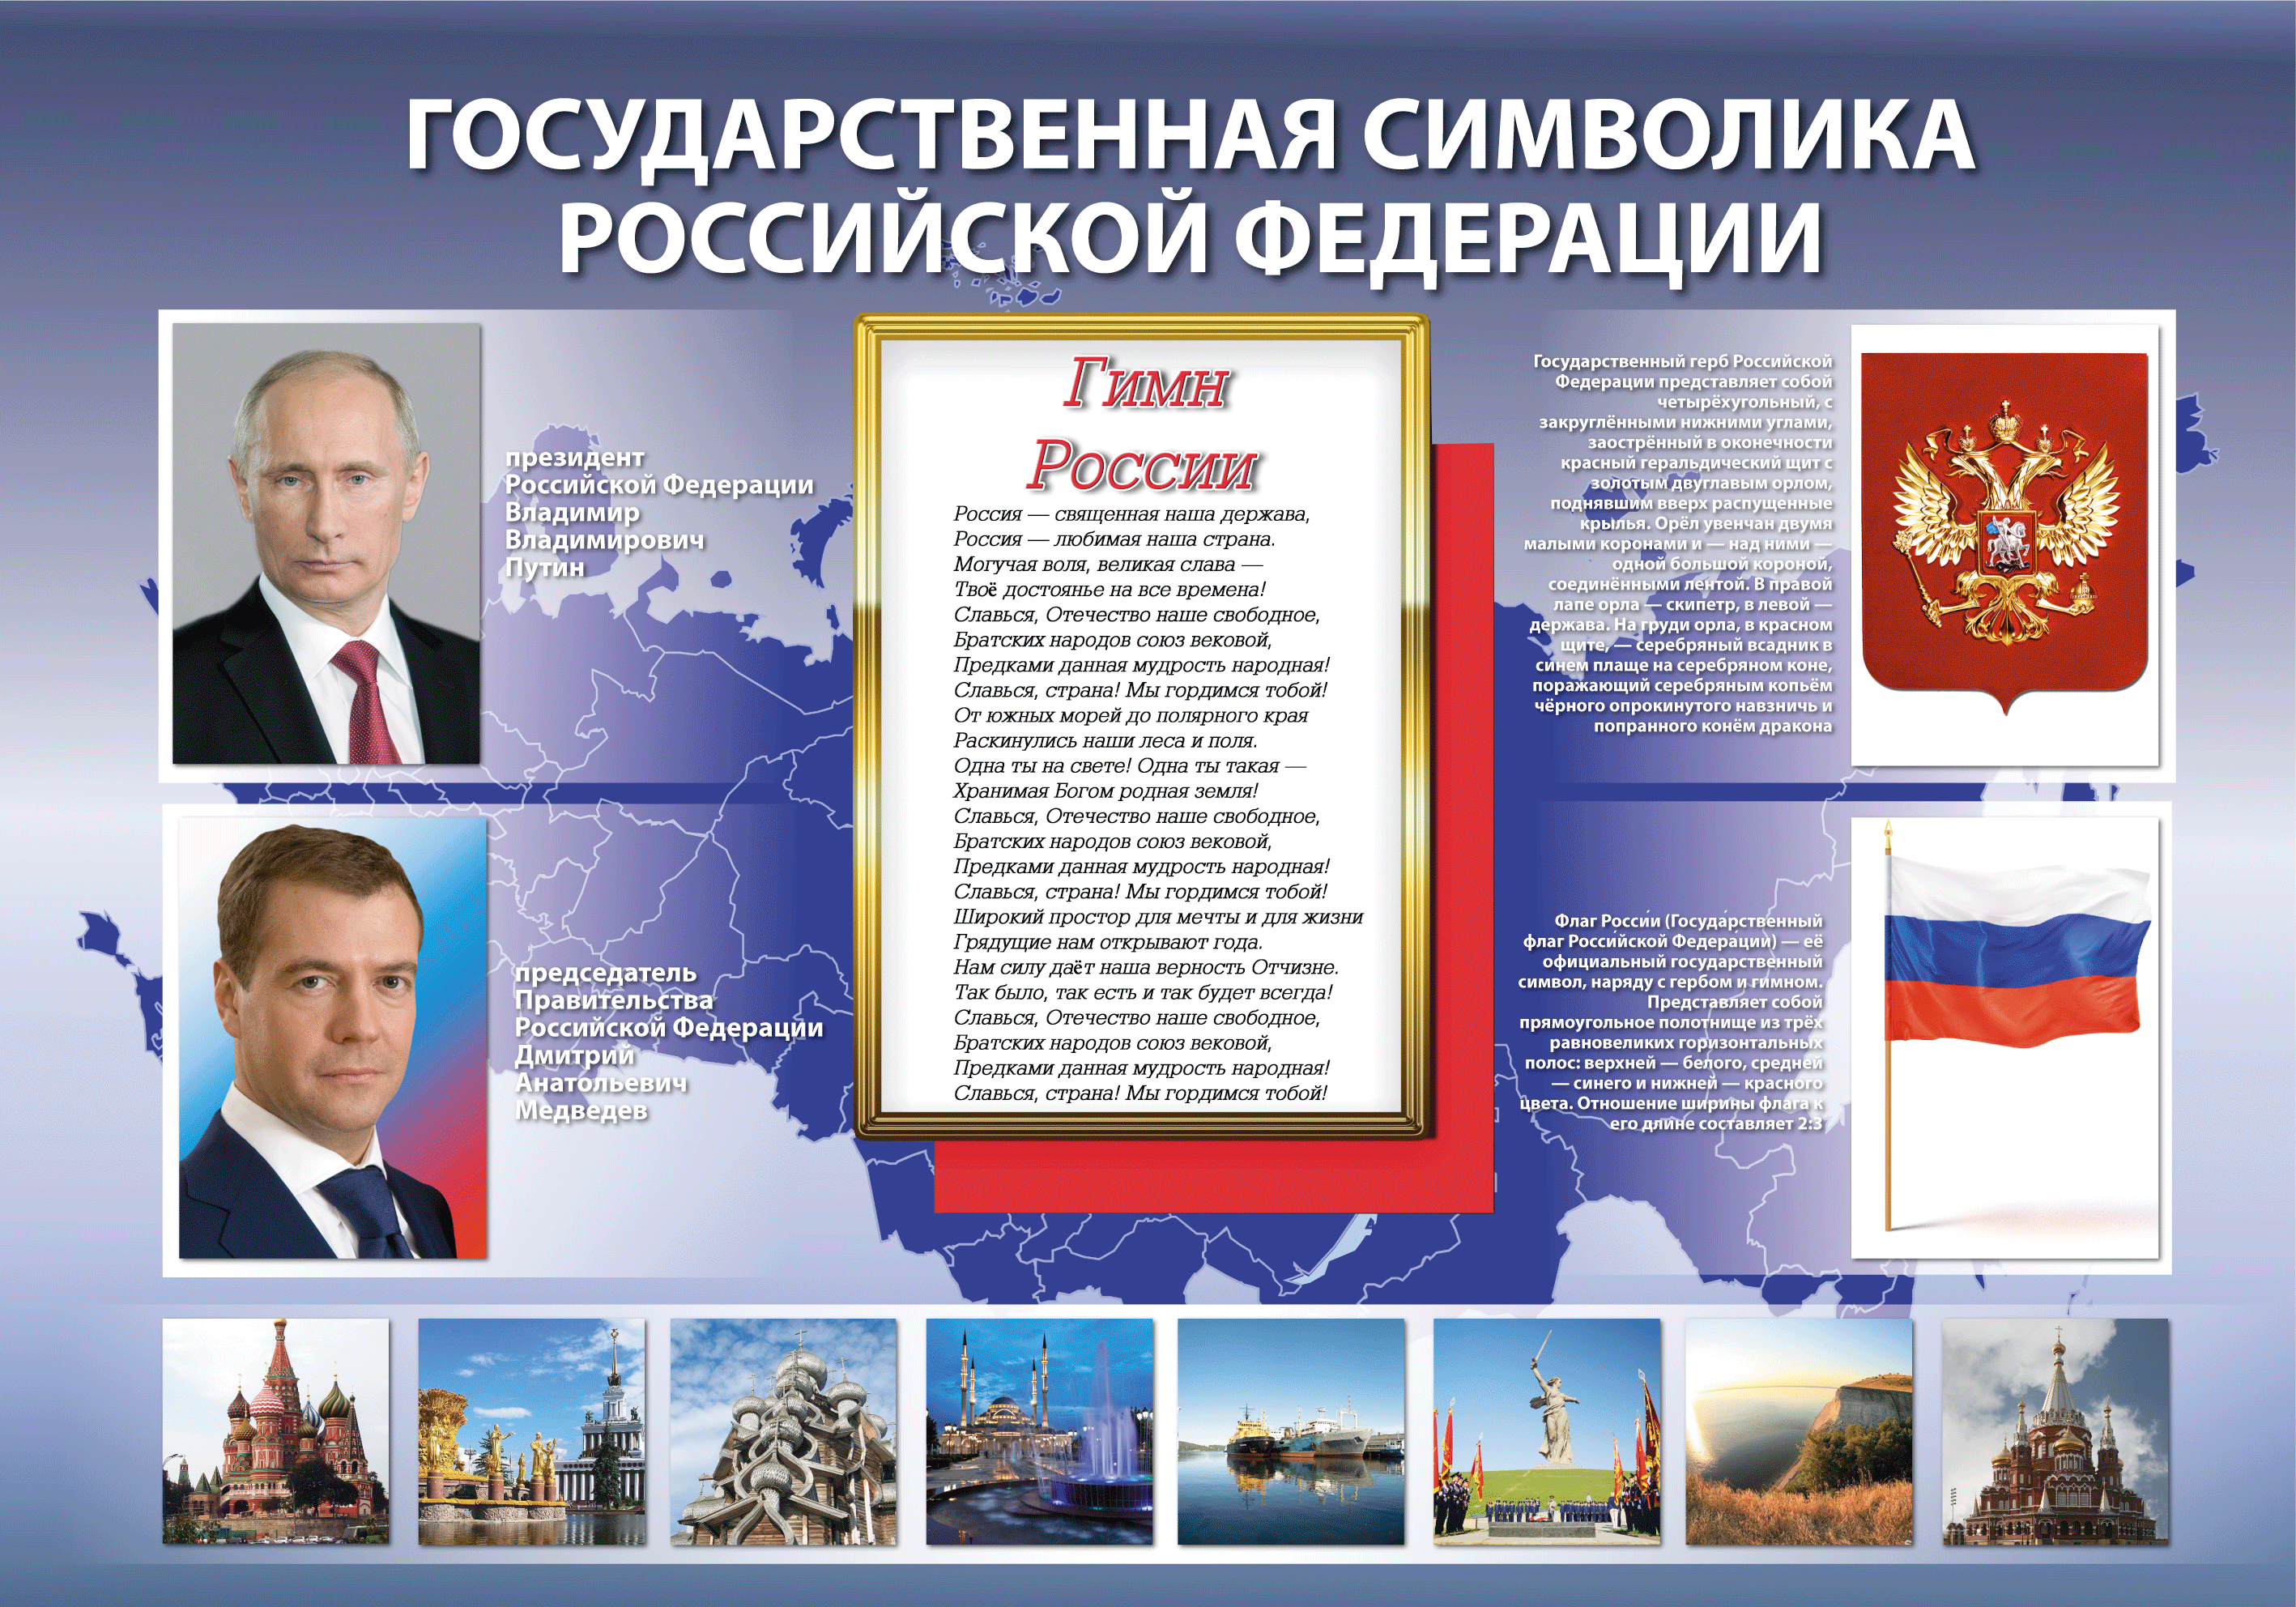 Информационный сайт российской федерации. Плакат с государственной символикой.